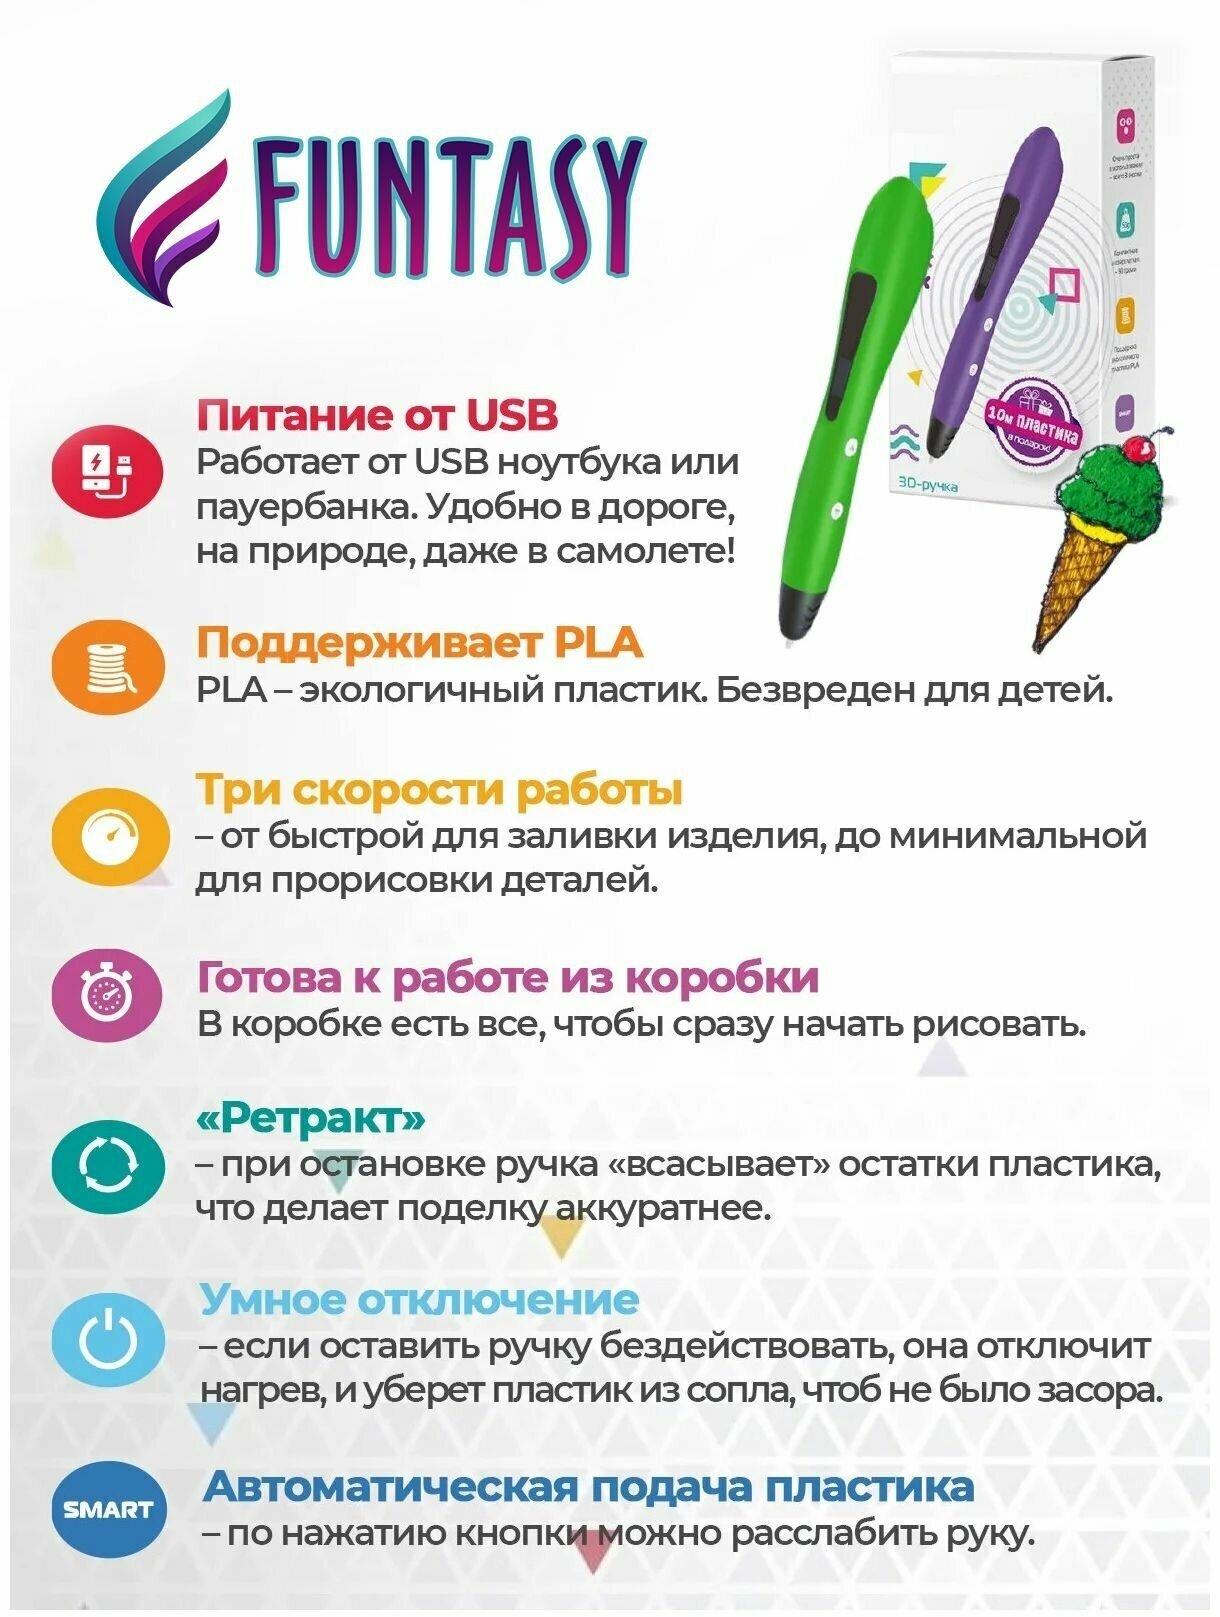 3D ручка для творчества Funtasy PIRATE с набором пластика 3д ручка для мальчиков и девочек (зеленая)  триде  подарок для ребенка